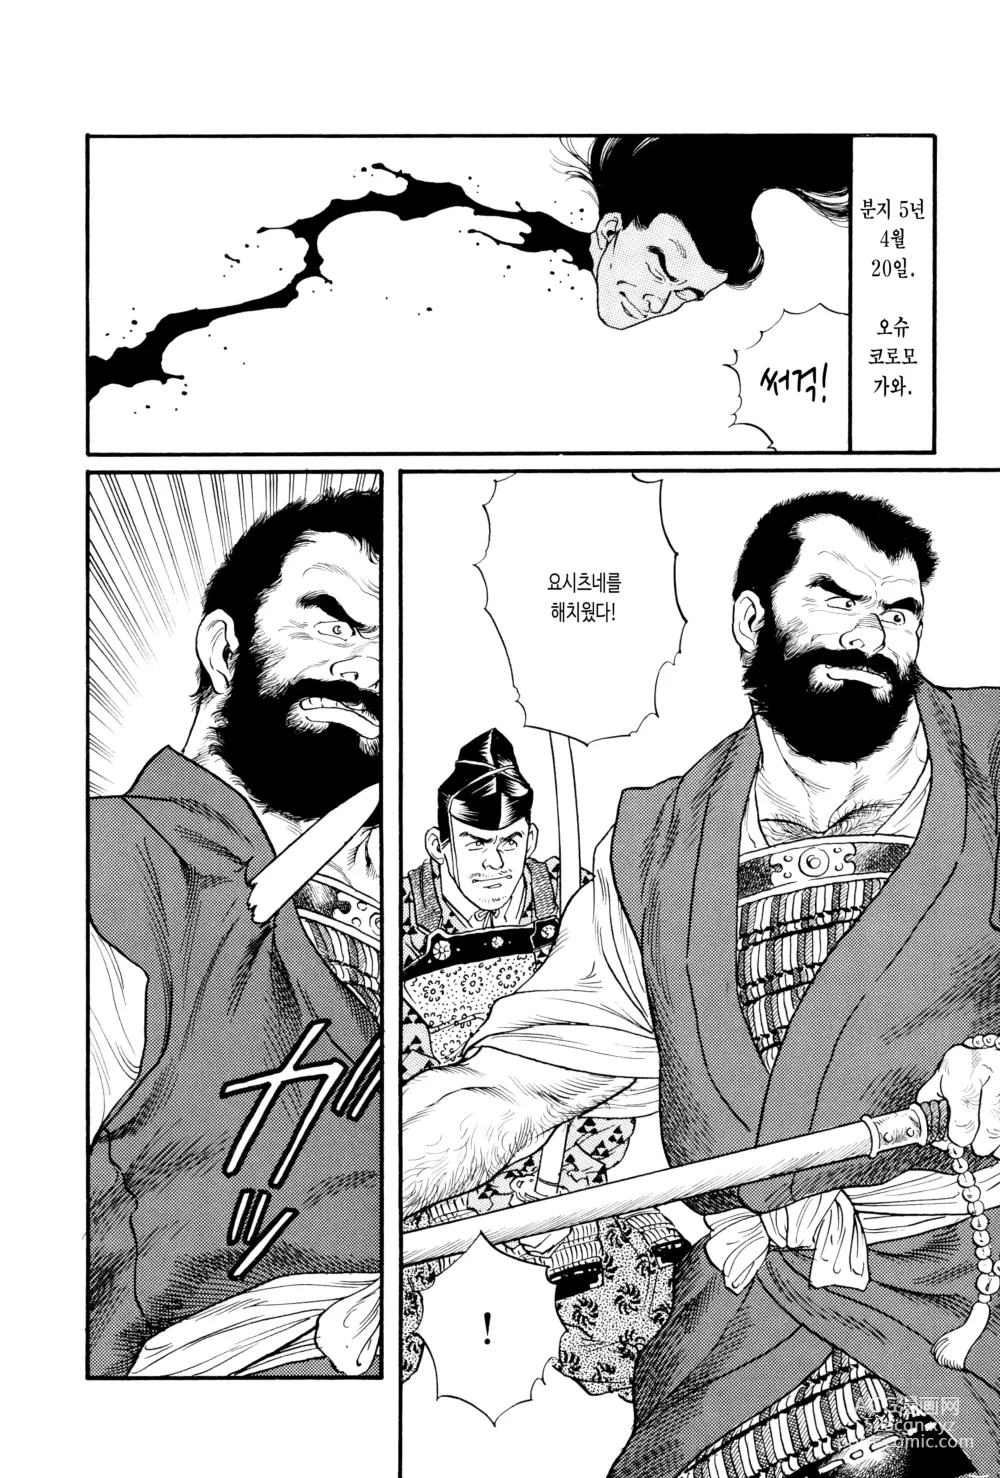 Page 4 of manga 코로모가와 이야기